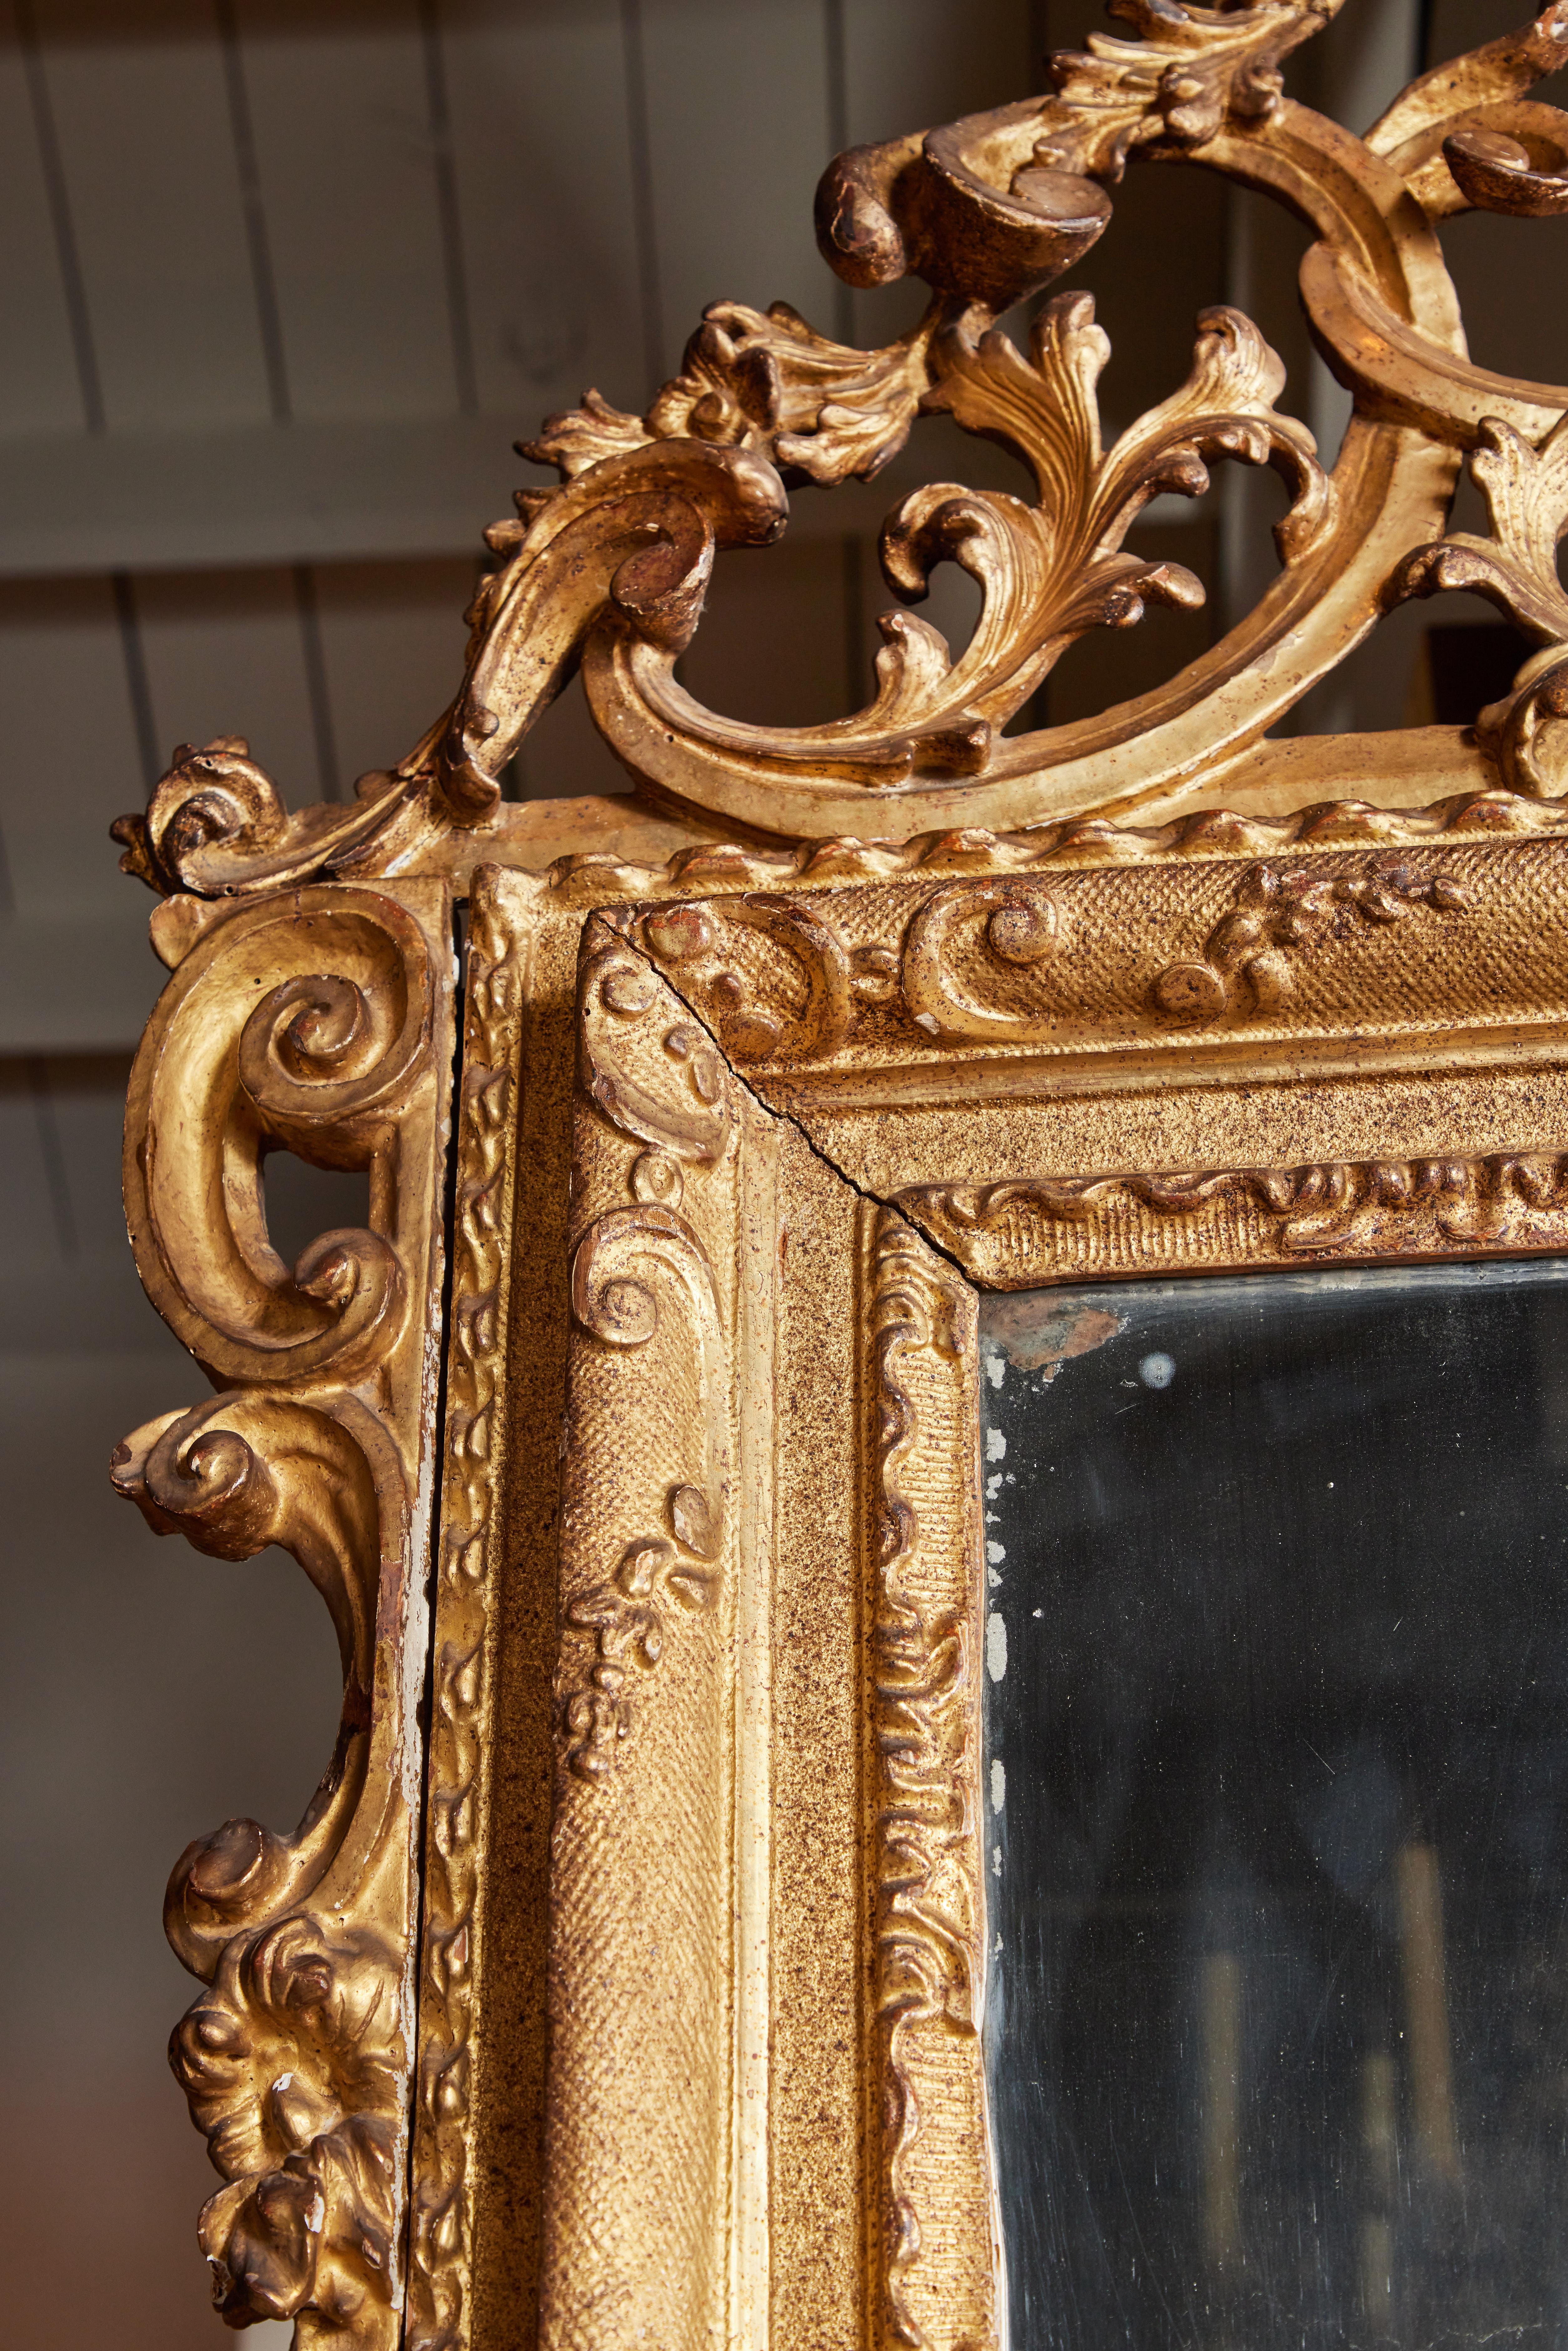 Großer, handgeschnitzter, gessoierter und 22-karätig vergoldeter venezianischer Spiegel, um 1760, mit originalem Quecksilberglas eingesetzt und von serpentinenartigen Reliefschnitzereien umgeben. Das Ganze wird von einer prachtvollen,